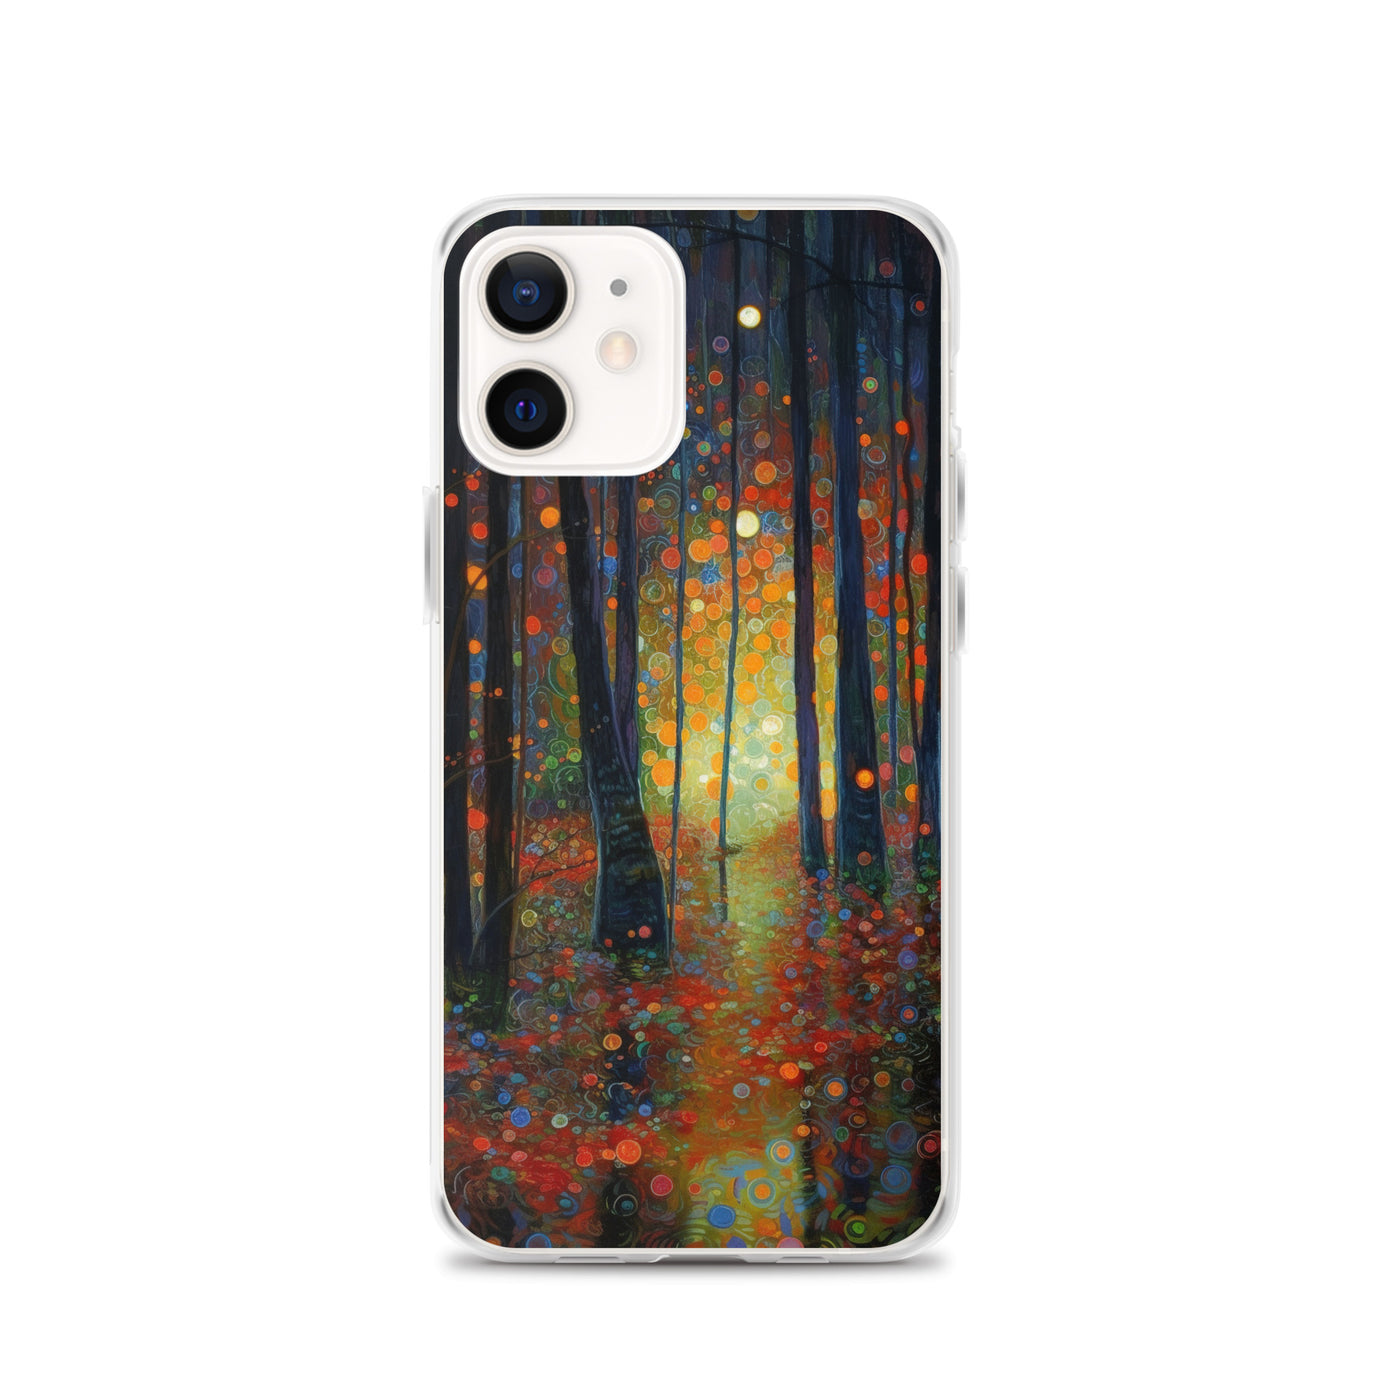 Wald voller Bäume - Herbstliche Stimmung - Malerei - iPhone Schutzhülle (durchsichtig) camping xxx iPhone 12